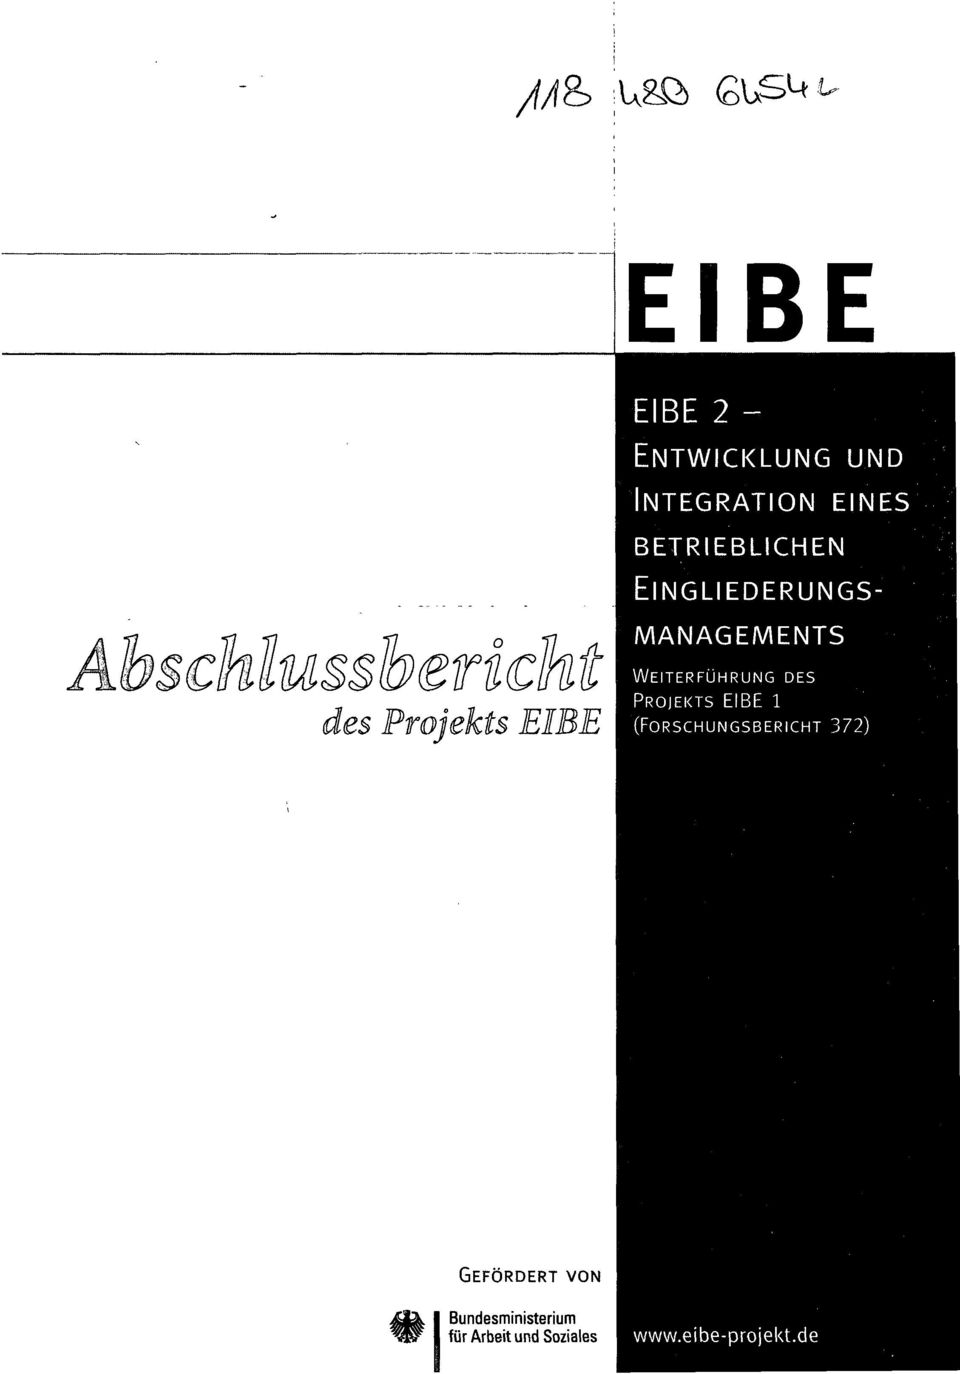 WEITERFÜHRUNG DES PROJEKTS EIBE 1 (FORSCHUNGSBERICHT